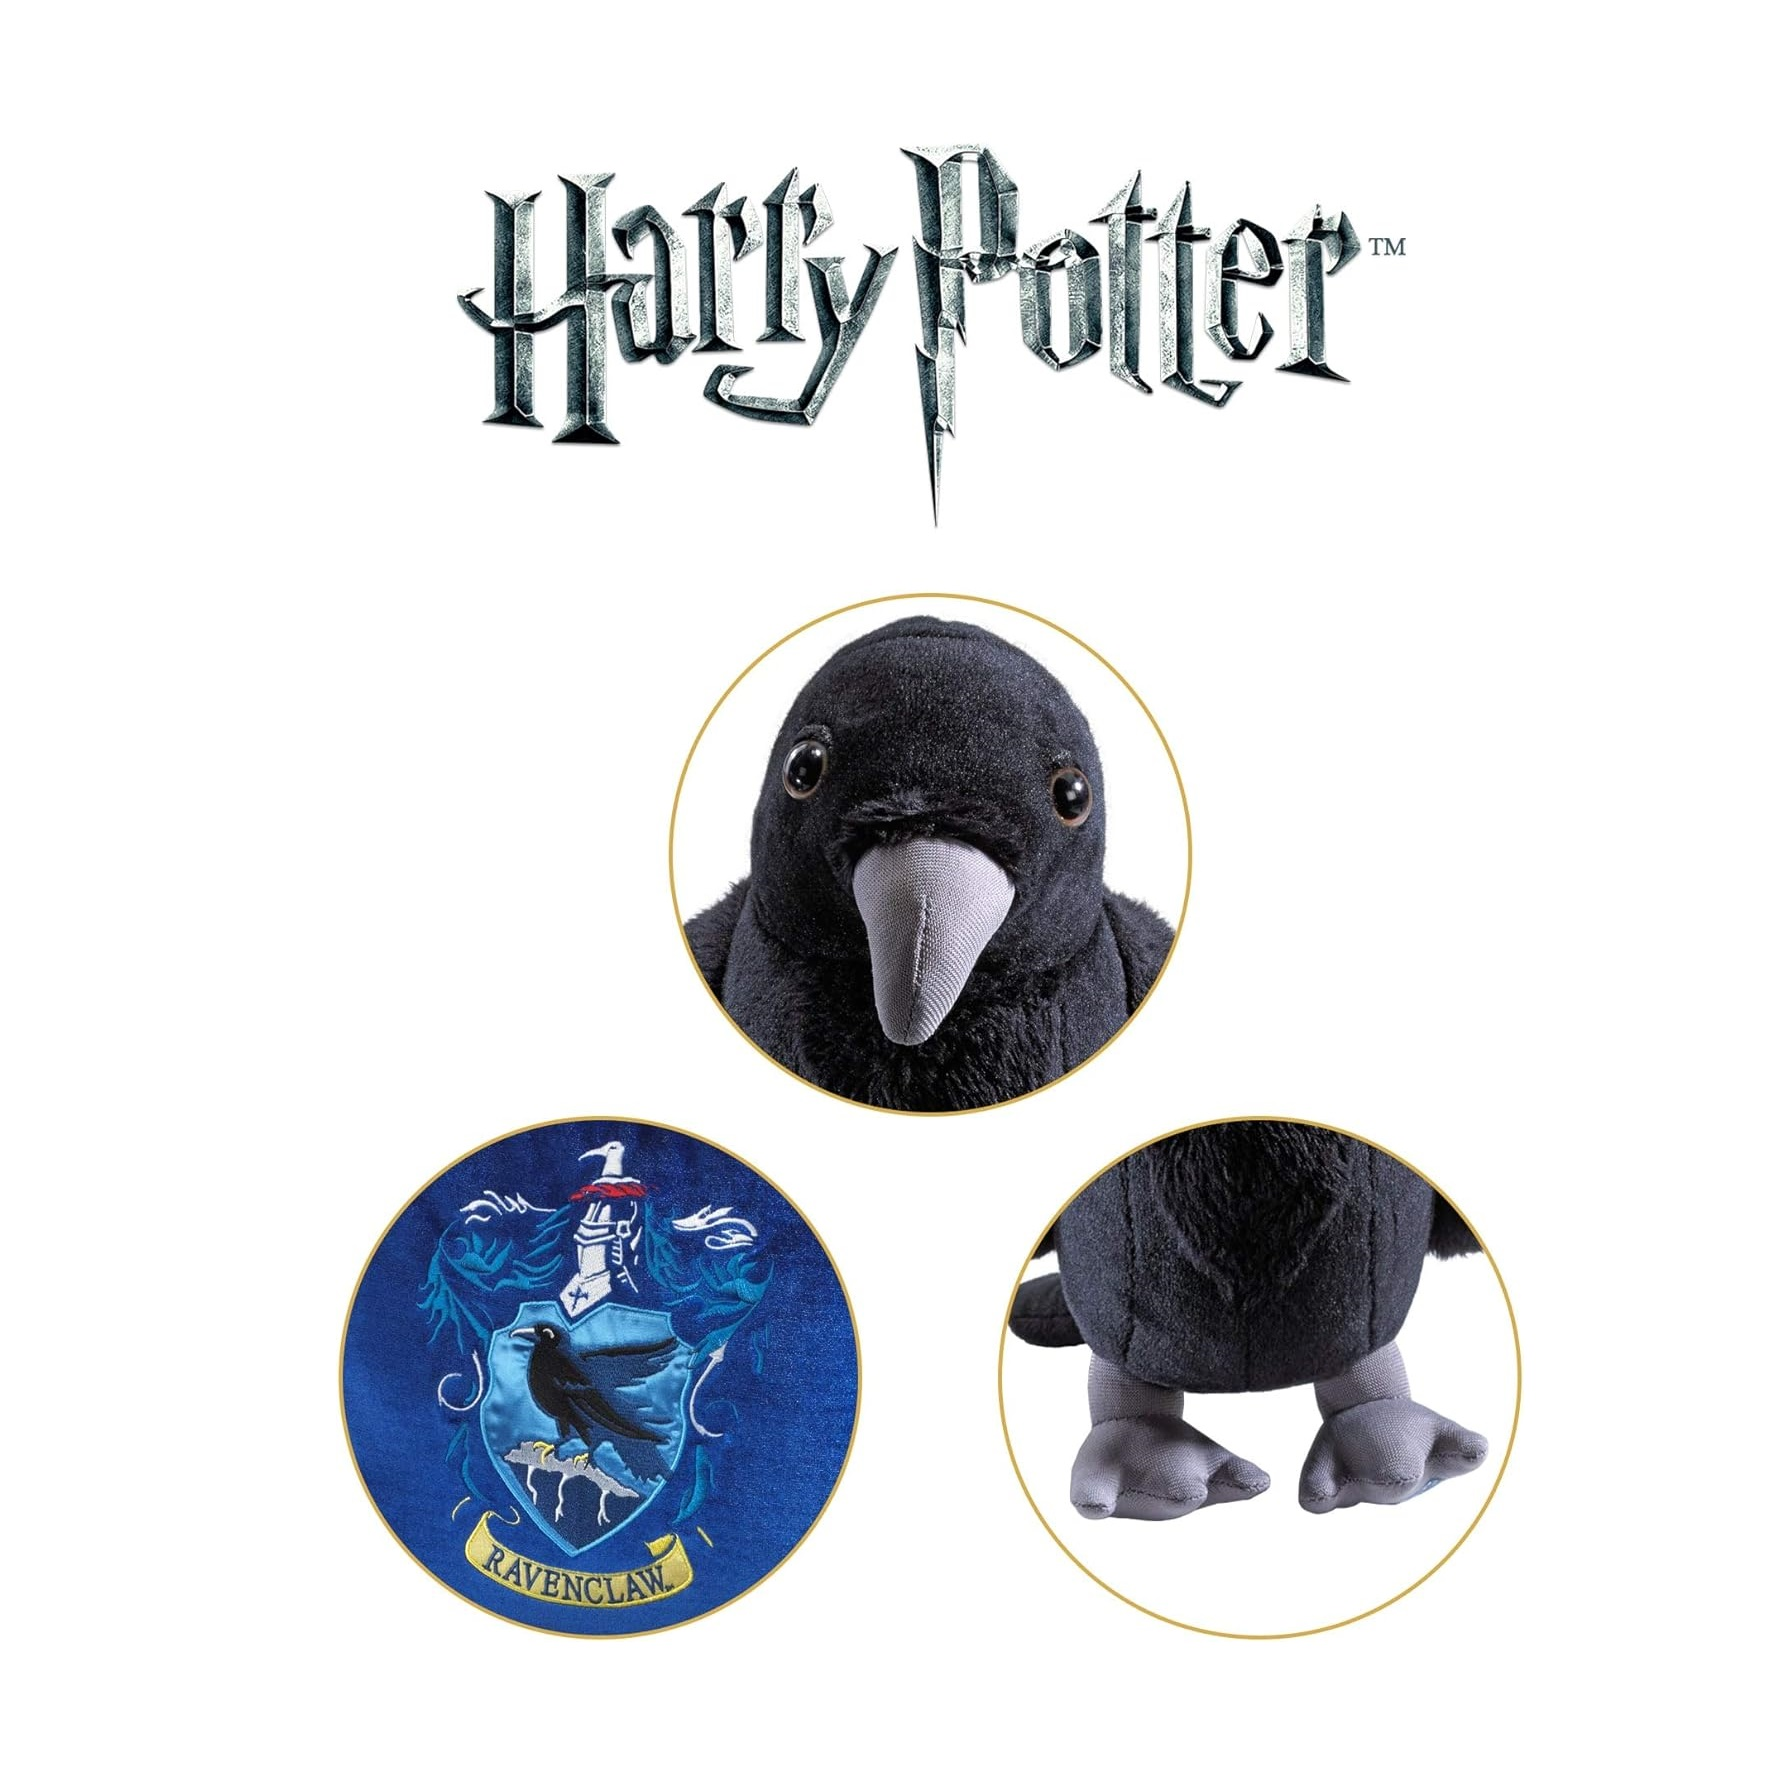 Plüschfigur mit Potter COLLECTION NOBLE bunt Plüschfigur Ravenclaw Harry Mascot House Kissen